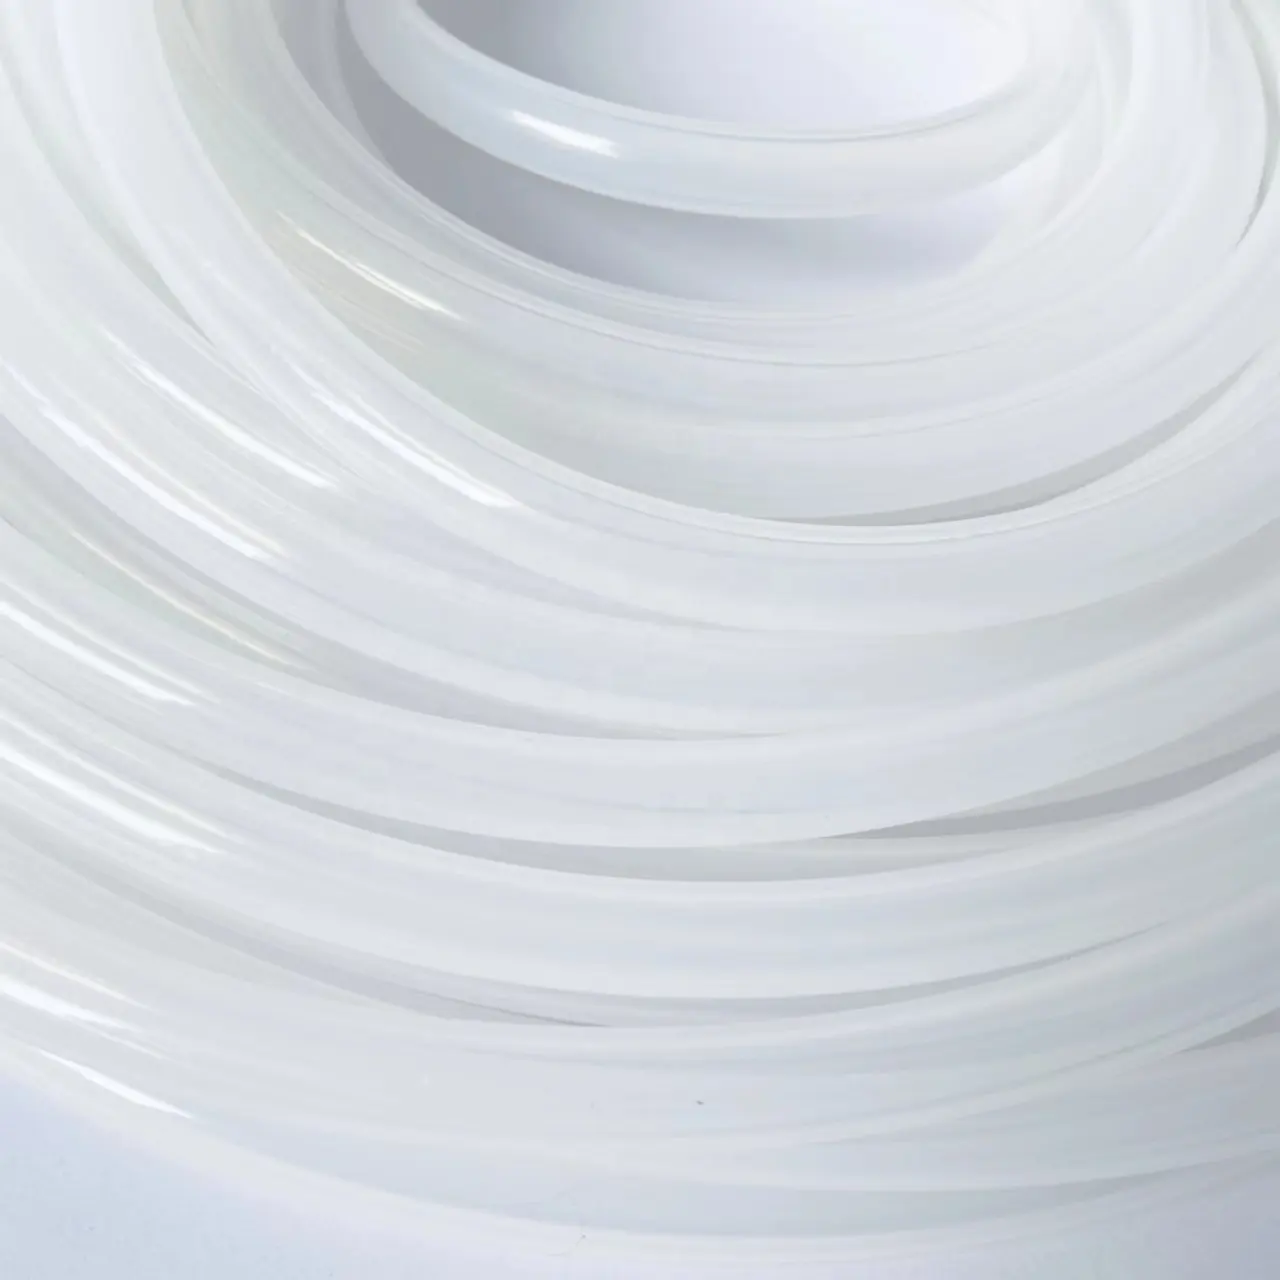 Tubo flessibile in silicone aspirazione aria vuoto tubo flessibile in silicone per uso alimentare tubo flessibile in gomma siliconica